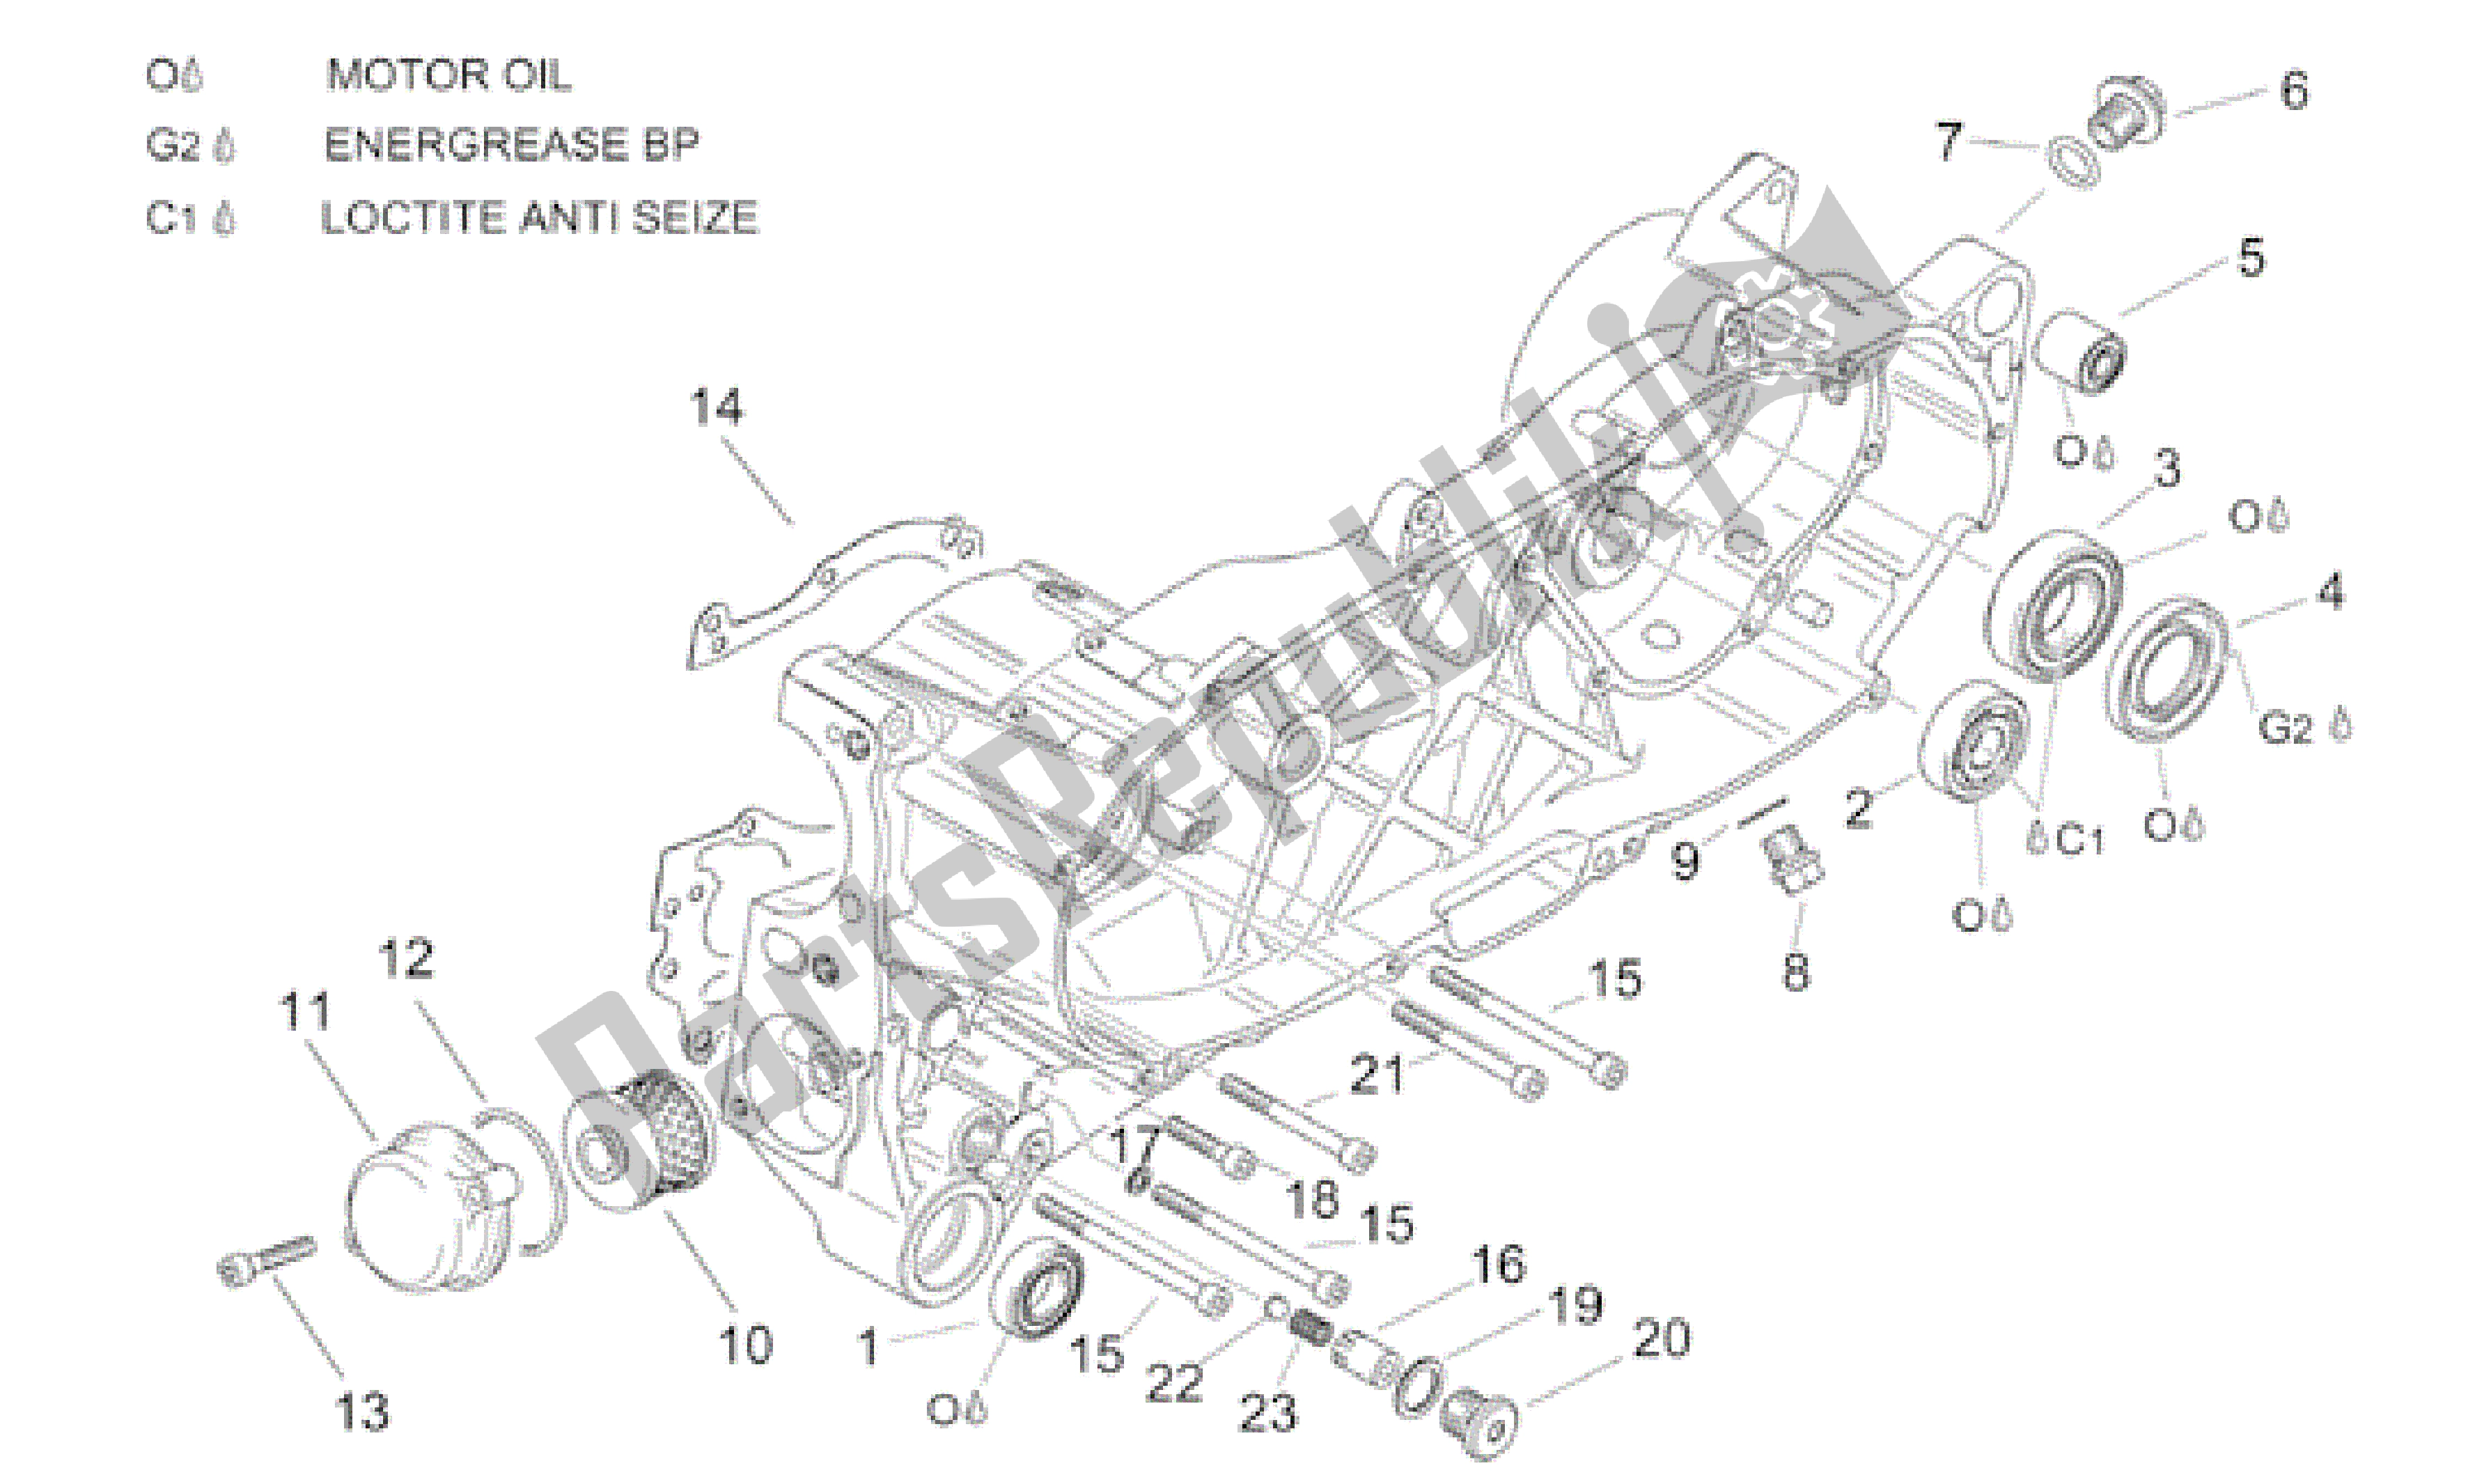 All parts for the Central Semi-crankcase of the Aprilia Leonardo 125 2001